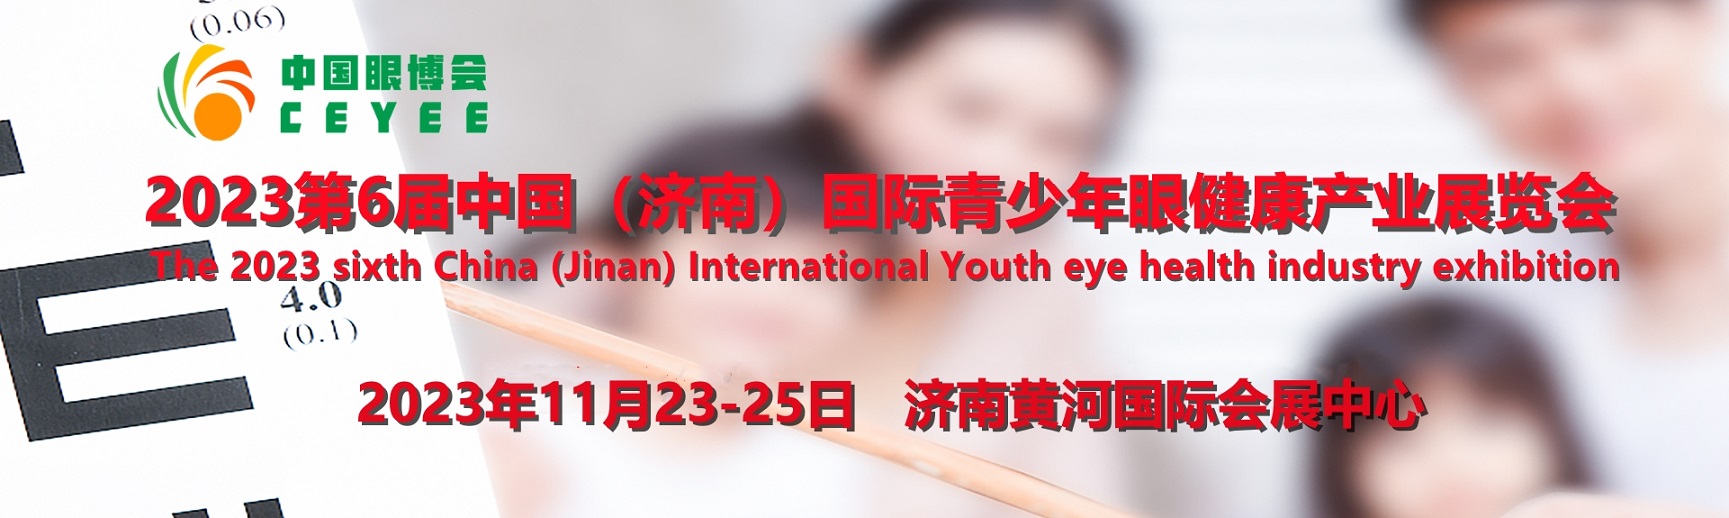 山东?2023中国眼博会/山东济南国际青少年眼健康产业展览会